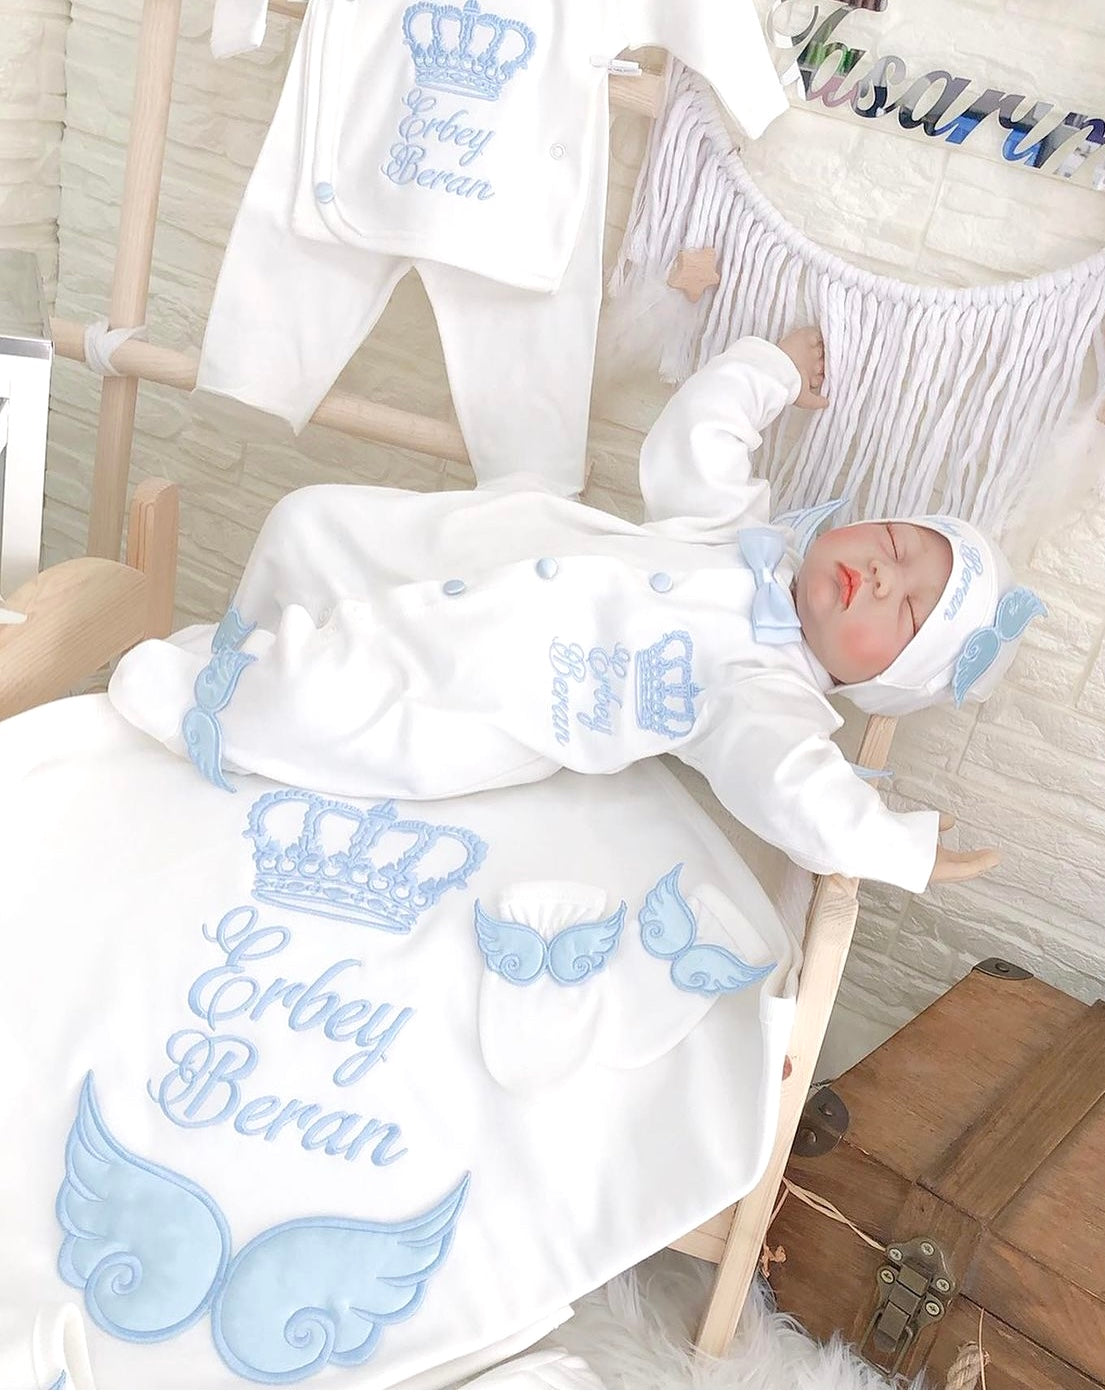 Jungen Neugeborenen Set Babyworld219 – Personalisiert Babydecke Kuscheldecke